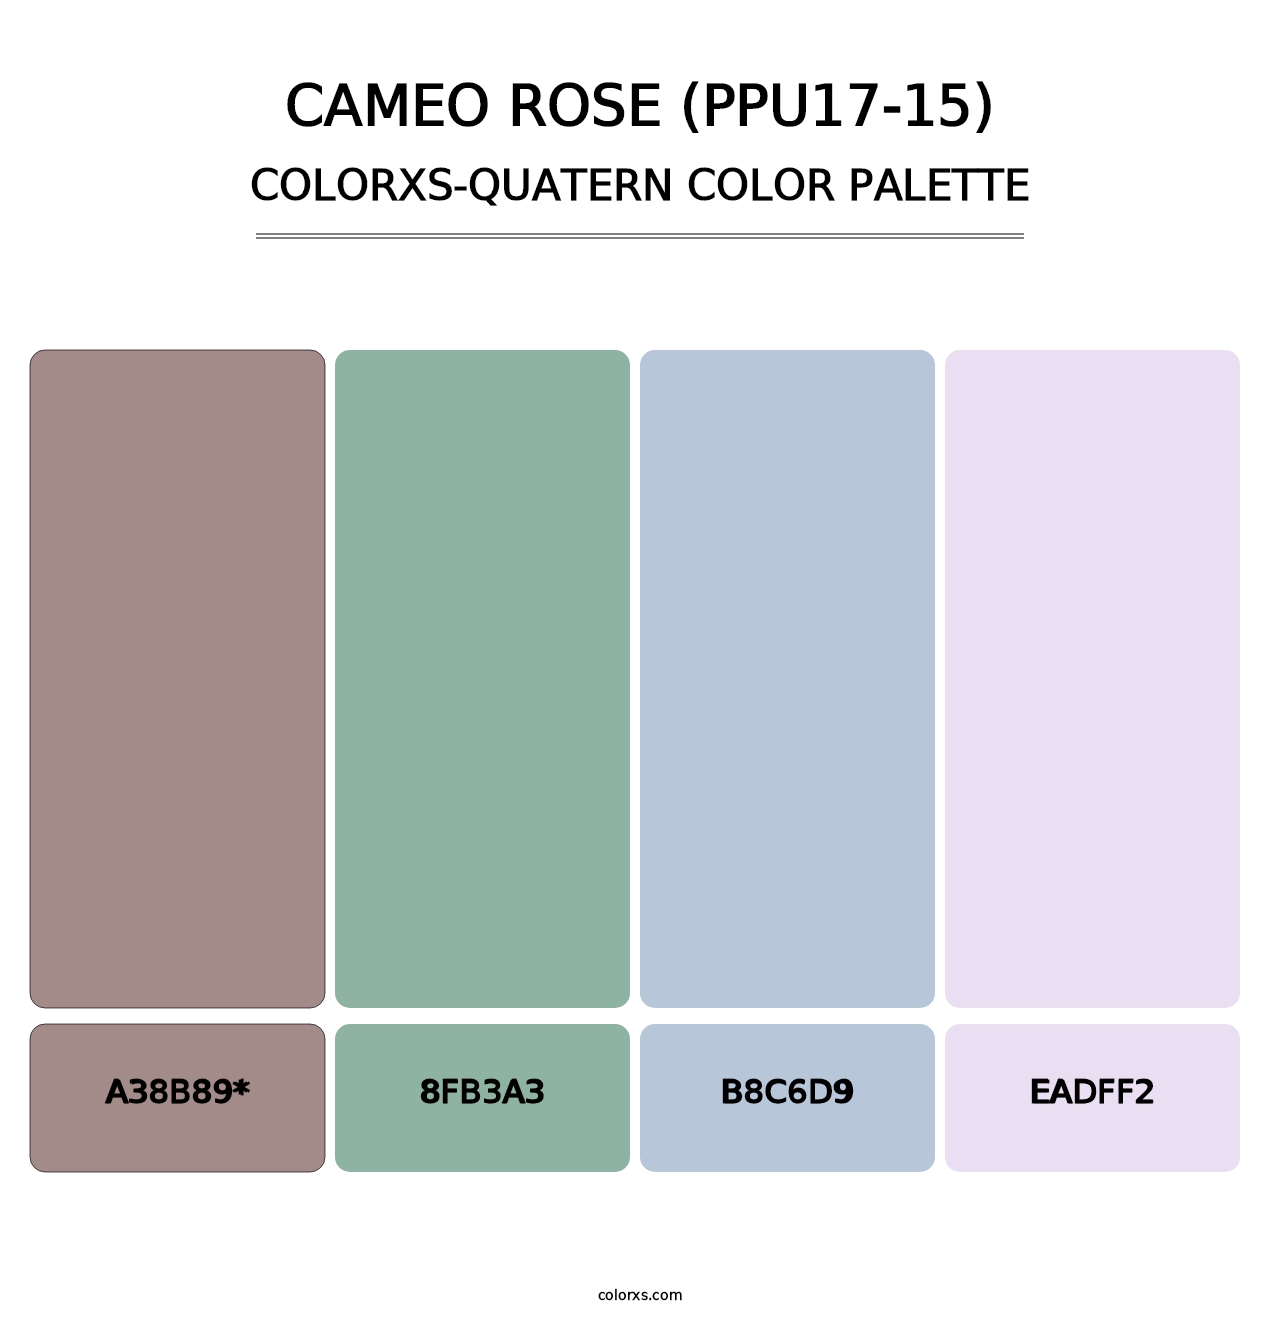 Cameo Rose (PPU17-15) - Colorxs Quatern Palette